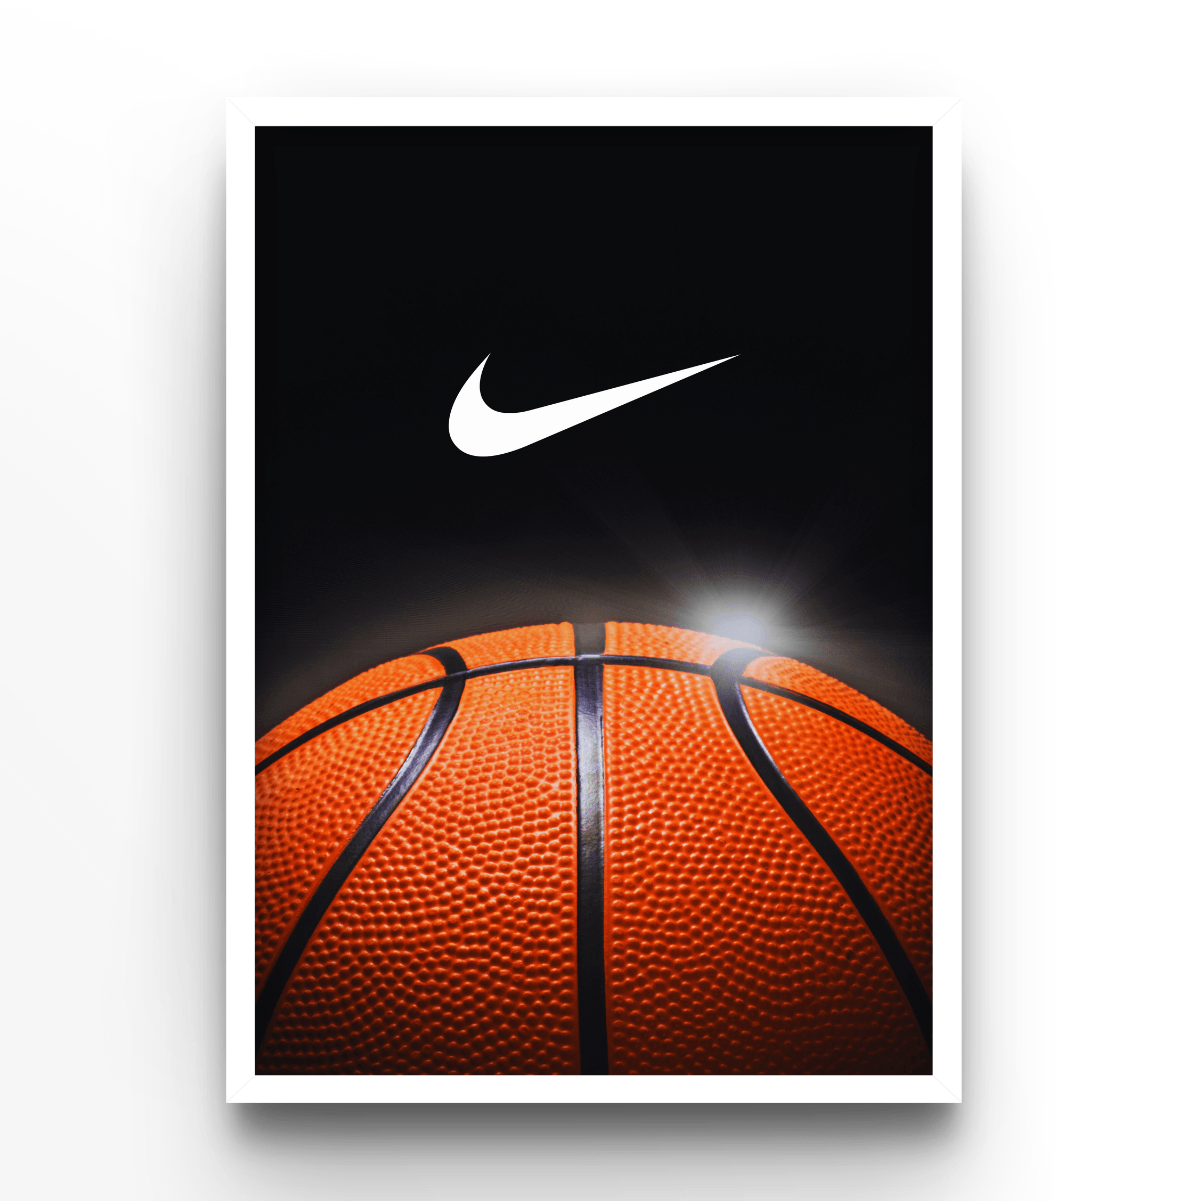 Nike Basketball - A4, A3, A2 Posters Base - Poster Print Shop / Art Prints / PostersBase